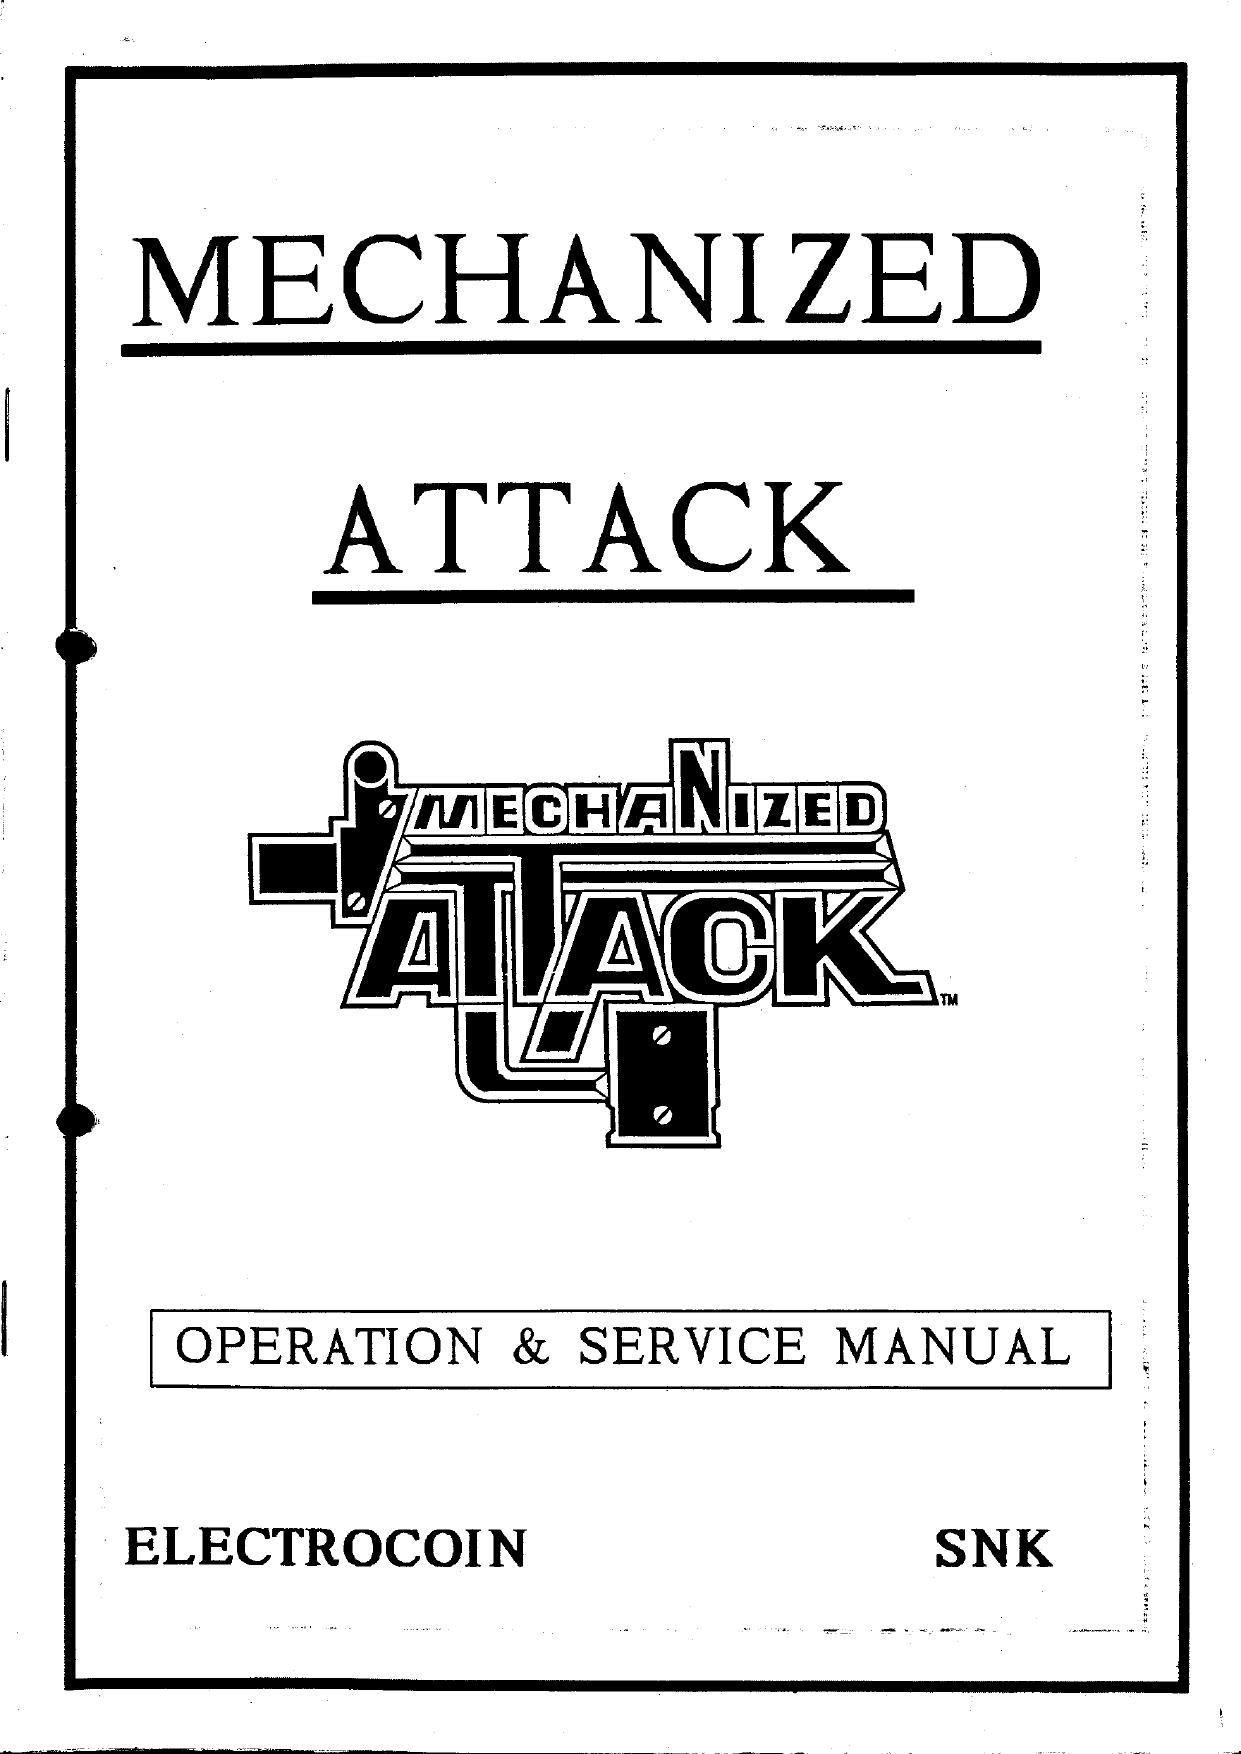 Mechanized Attack (v2)